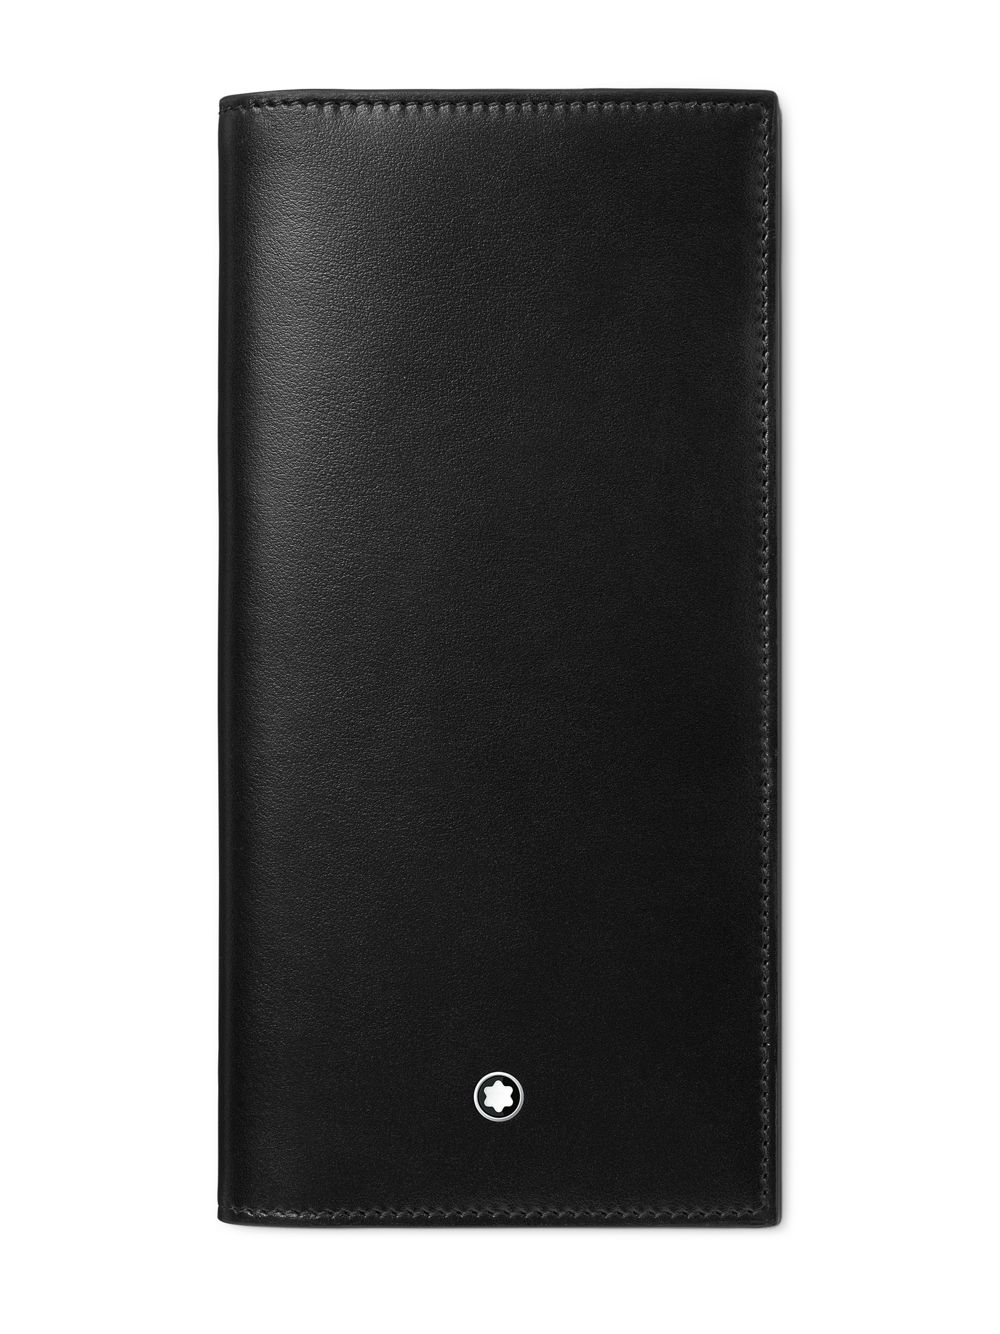 Длинный бумажник Meisterstück Montblanc, черный портмоне обложки montblanc 00124190 бумажник